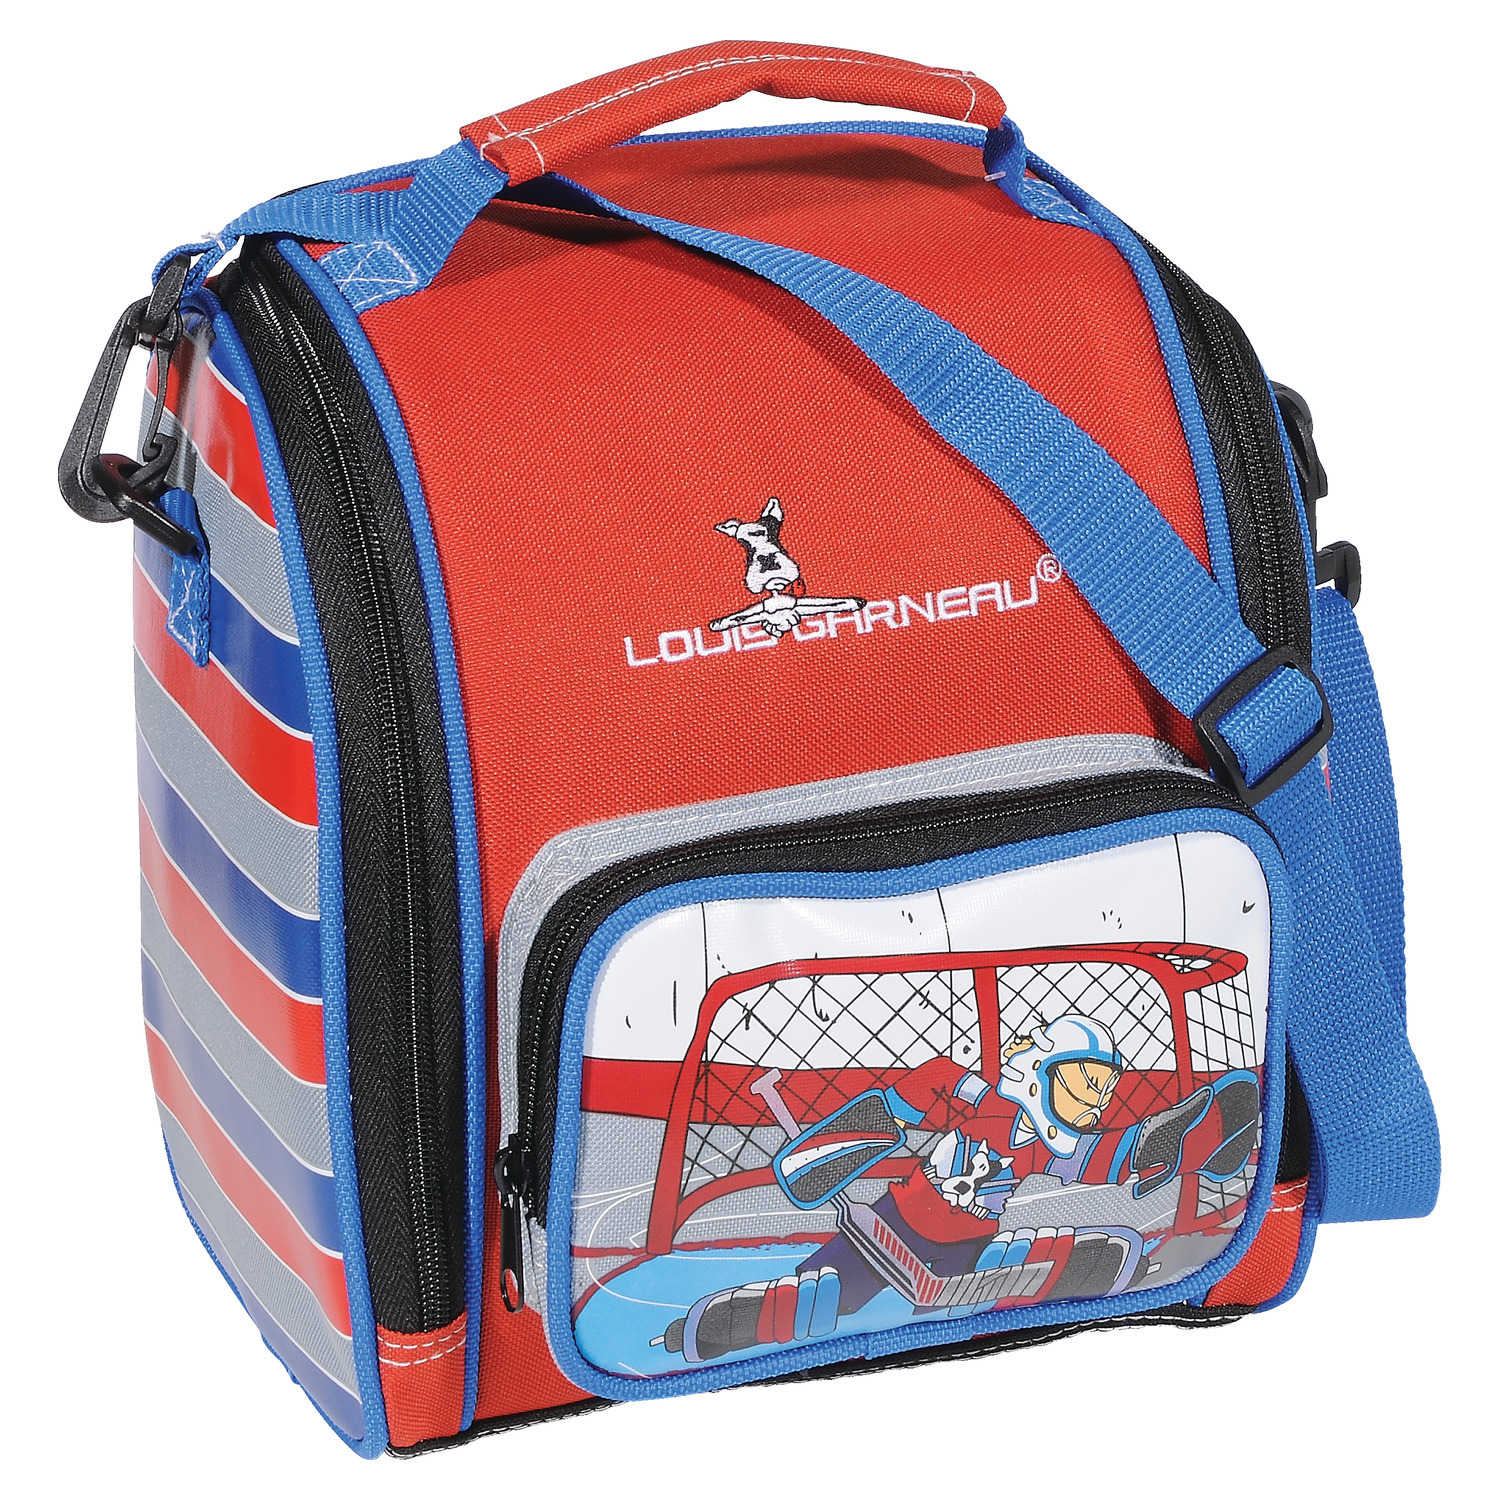 Louis Garneau Hockey - Equipment - Back to school - Lunch bags - Intersport Canada